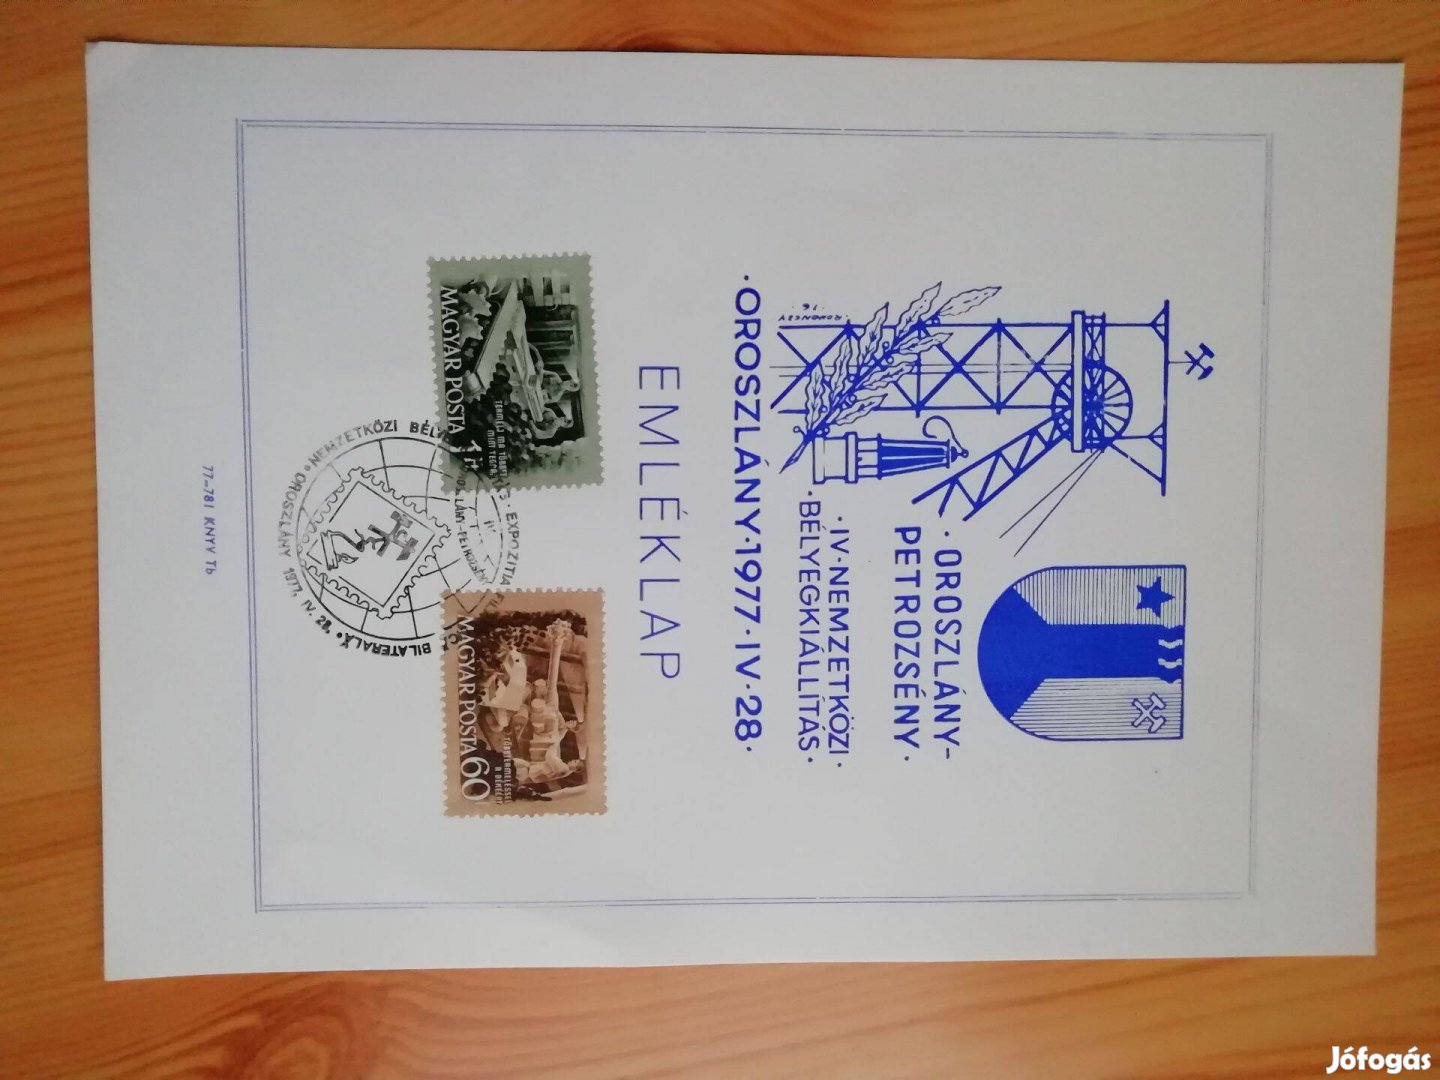 Oroszlányi 1977-es bélyegkiállítás emléklap